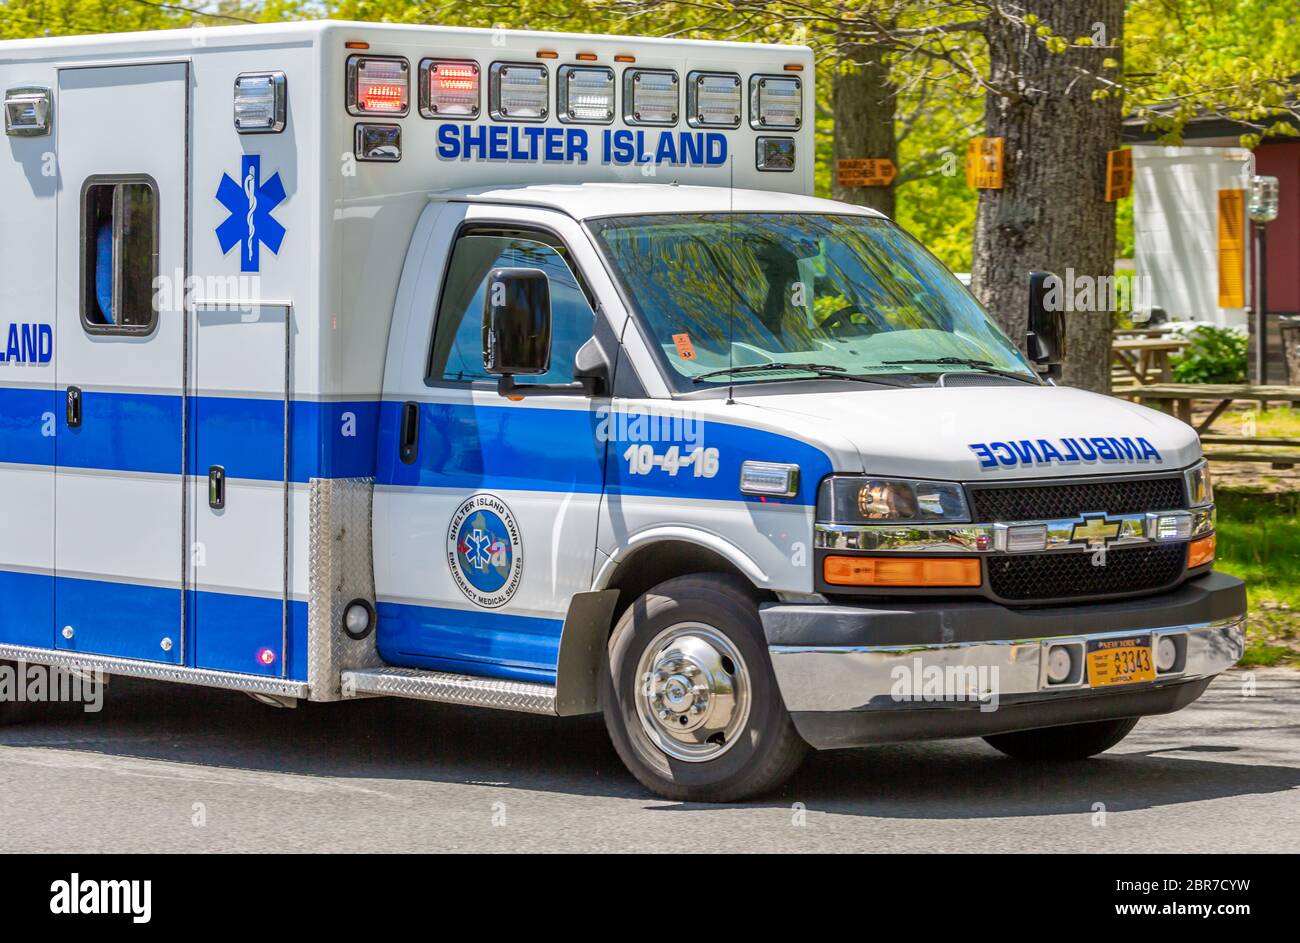 Detailbild eines Krankenwagens von Shelter Island, Shelter Island, NY Stockfoto